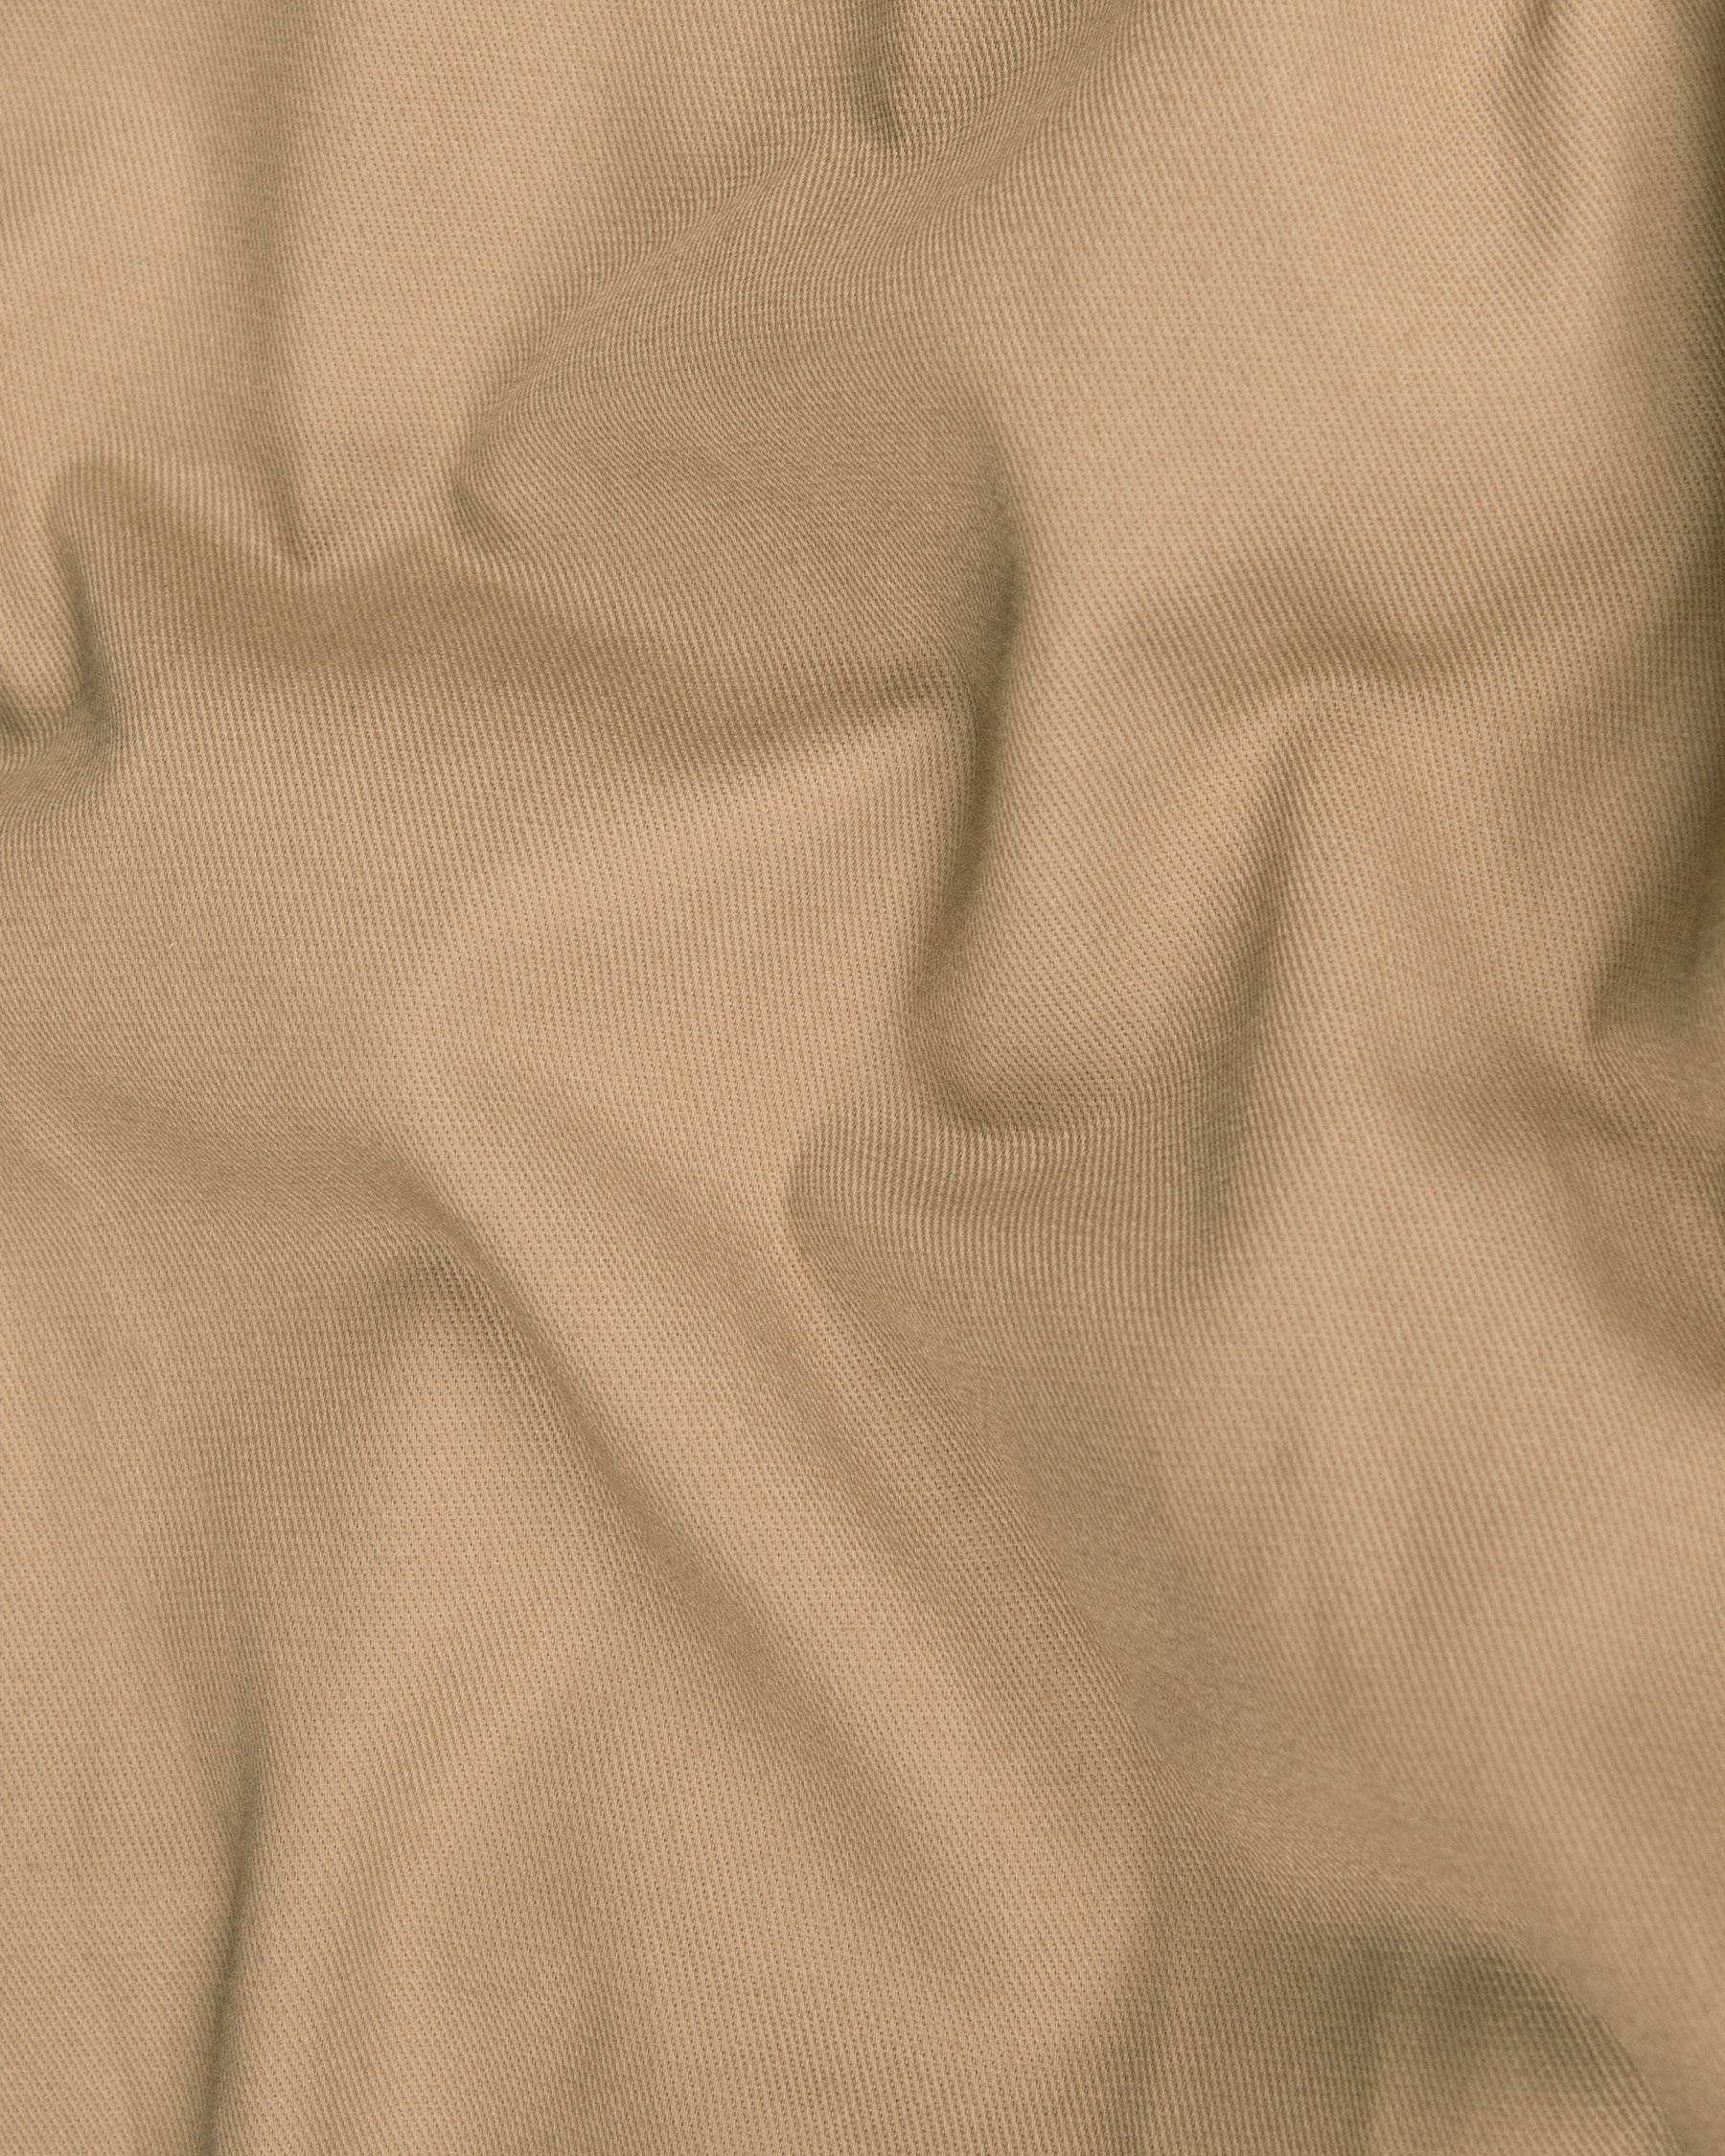 Mongoose Cream Premium Cotton Waistcoat